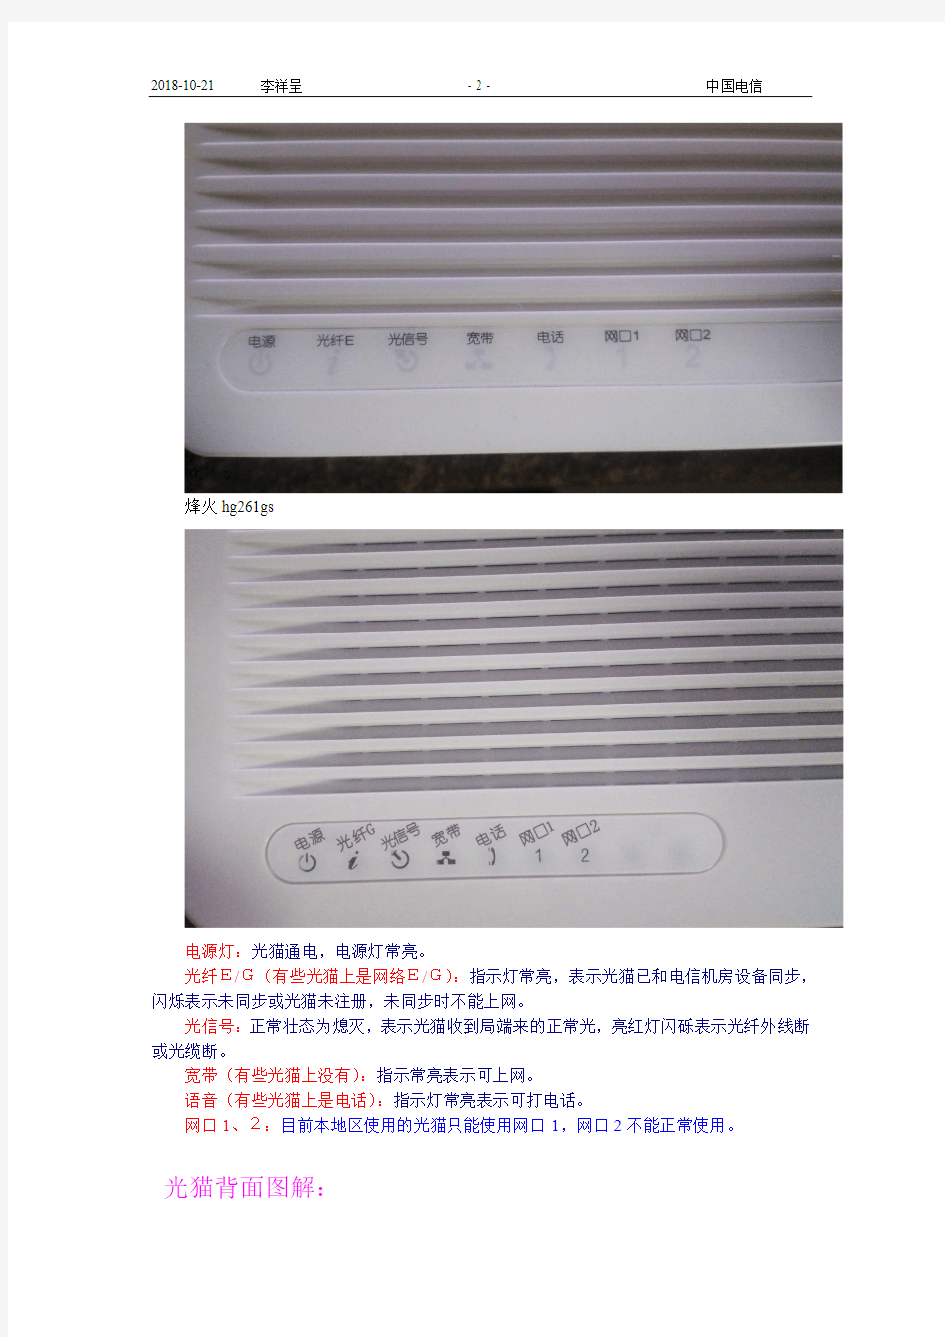 中国电信光纤宽带(障碍)用户自助处理手册 李祥呈资料